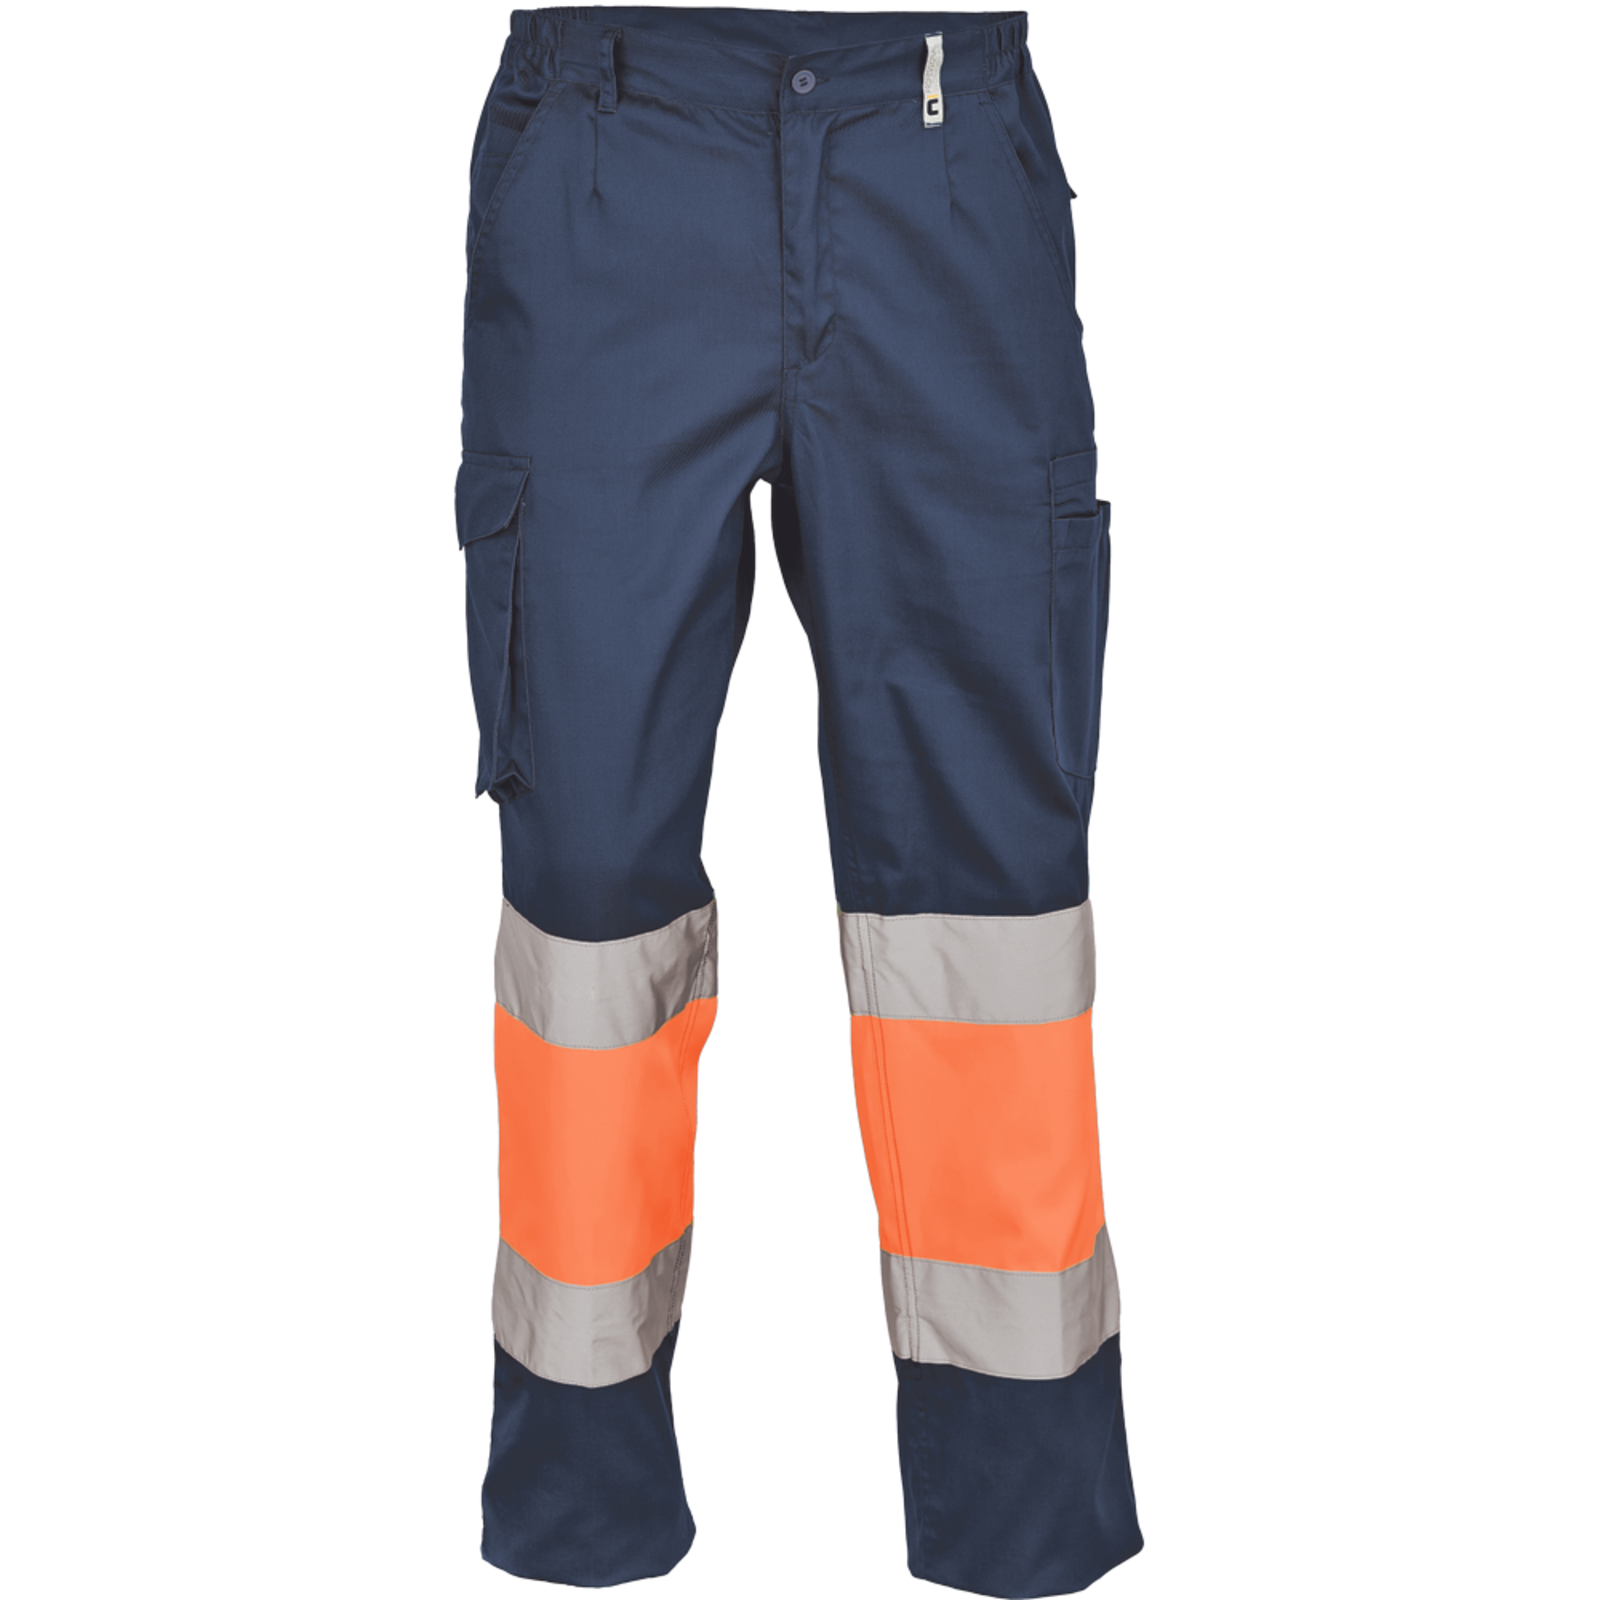 Pracovné reflexné nohavice Cerva Ciudades Bilbao HV - veľkosť: 46, farba: nám. modrá/oranžová